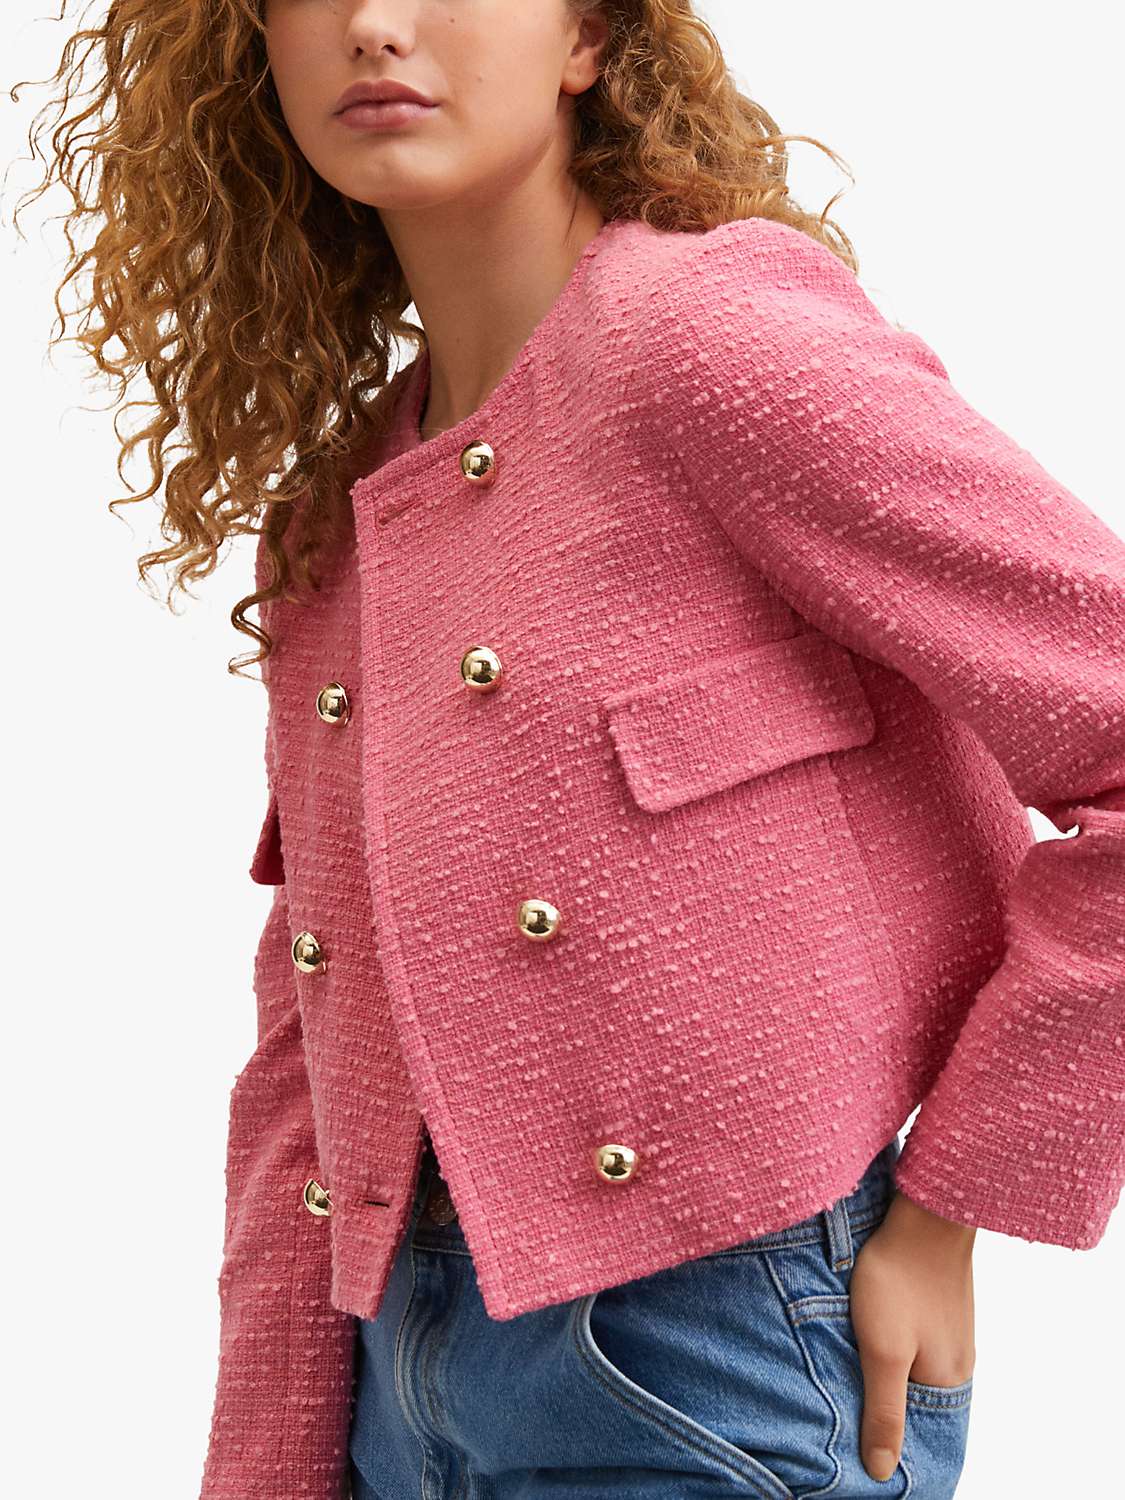 Mango Treze Tweed Jacket, Pastel Pink at John Lewis & Partners